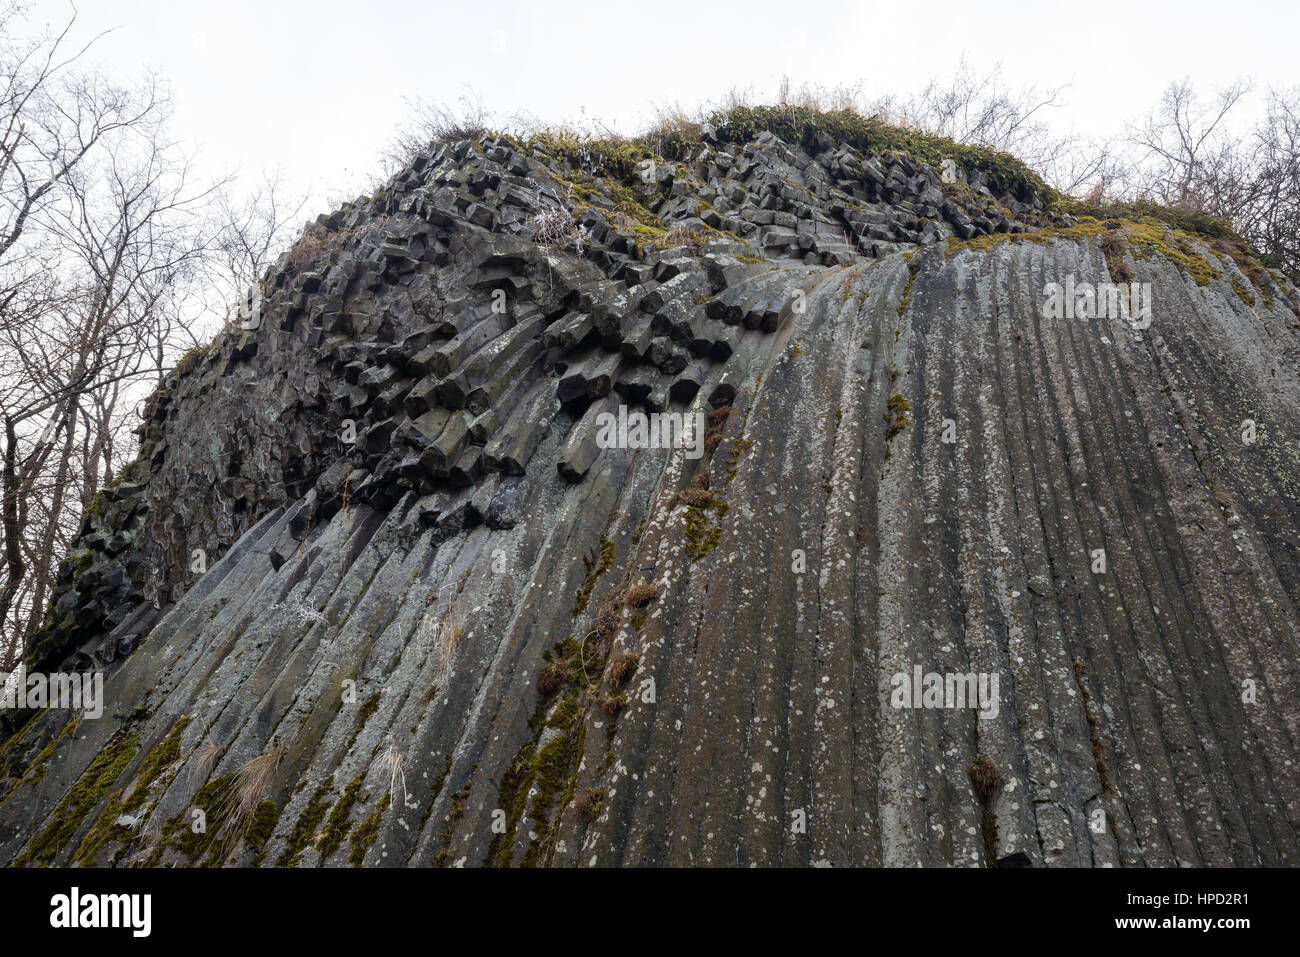 Felsigen Wasserfall - basaltische fünfeckigen und sechseckige Säulen - geologische Formation vulkanischen Ursprungs in der Nähe von Schloss Somoska, Slowakei Stockfoto